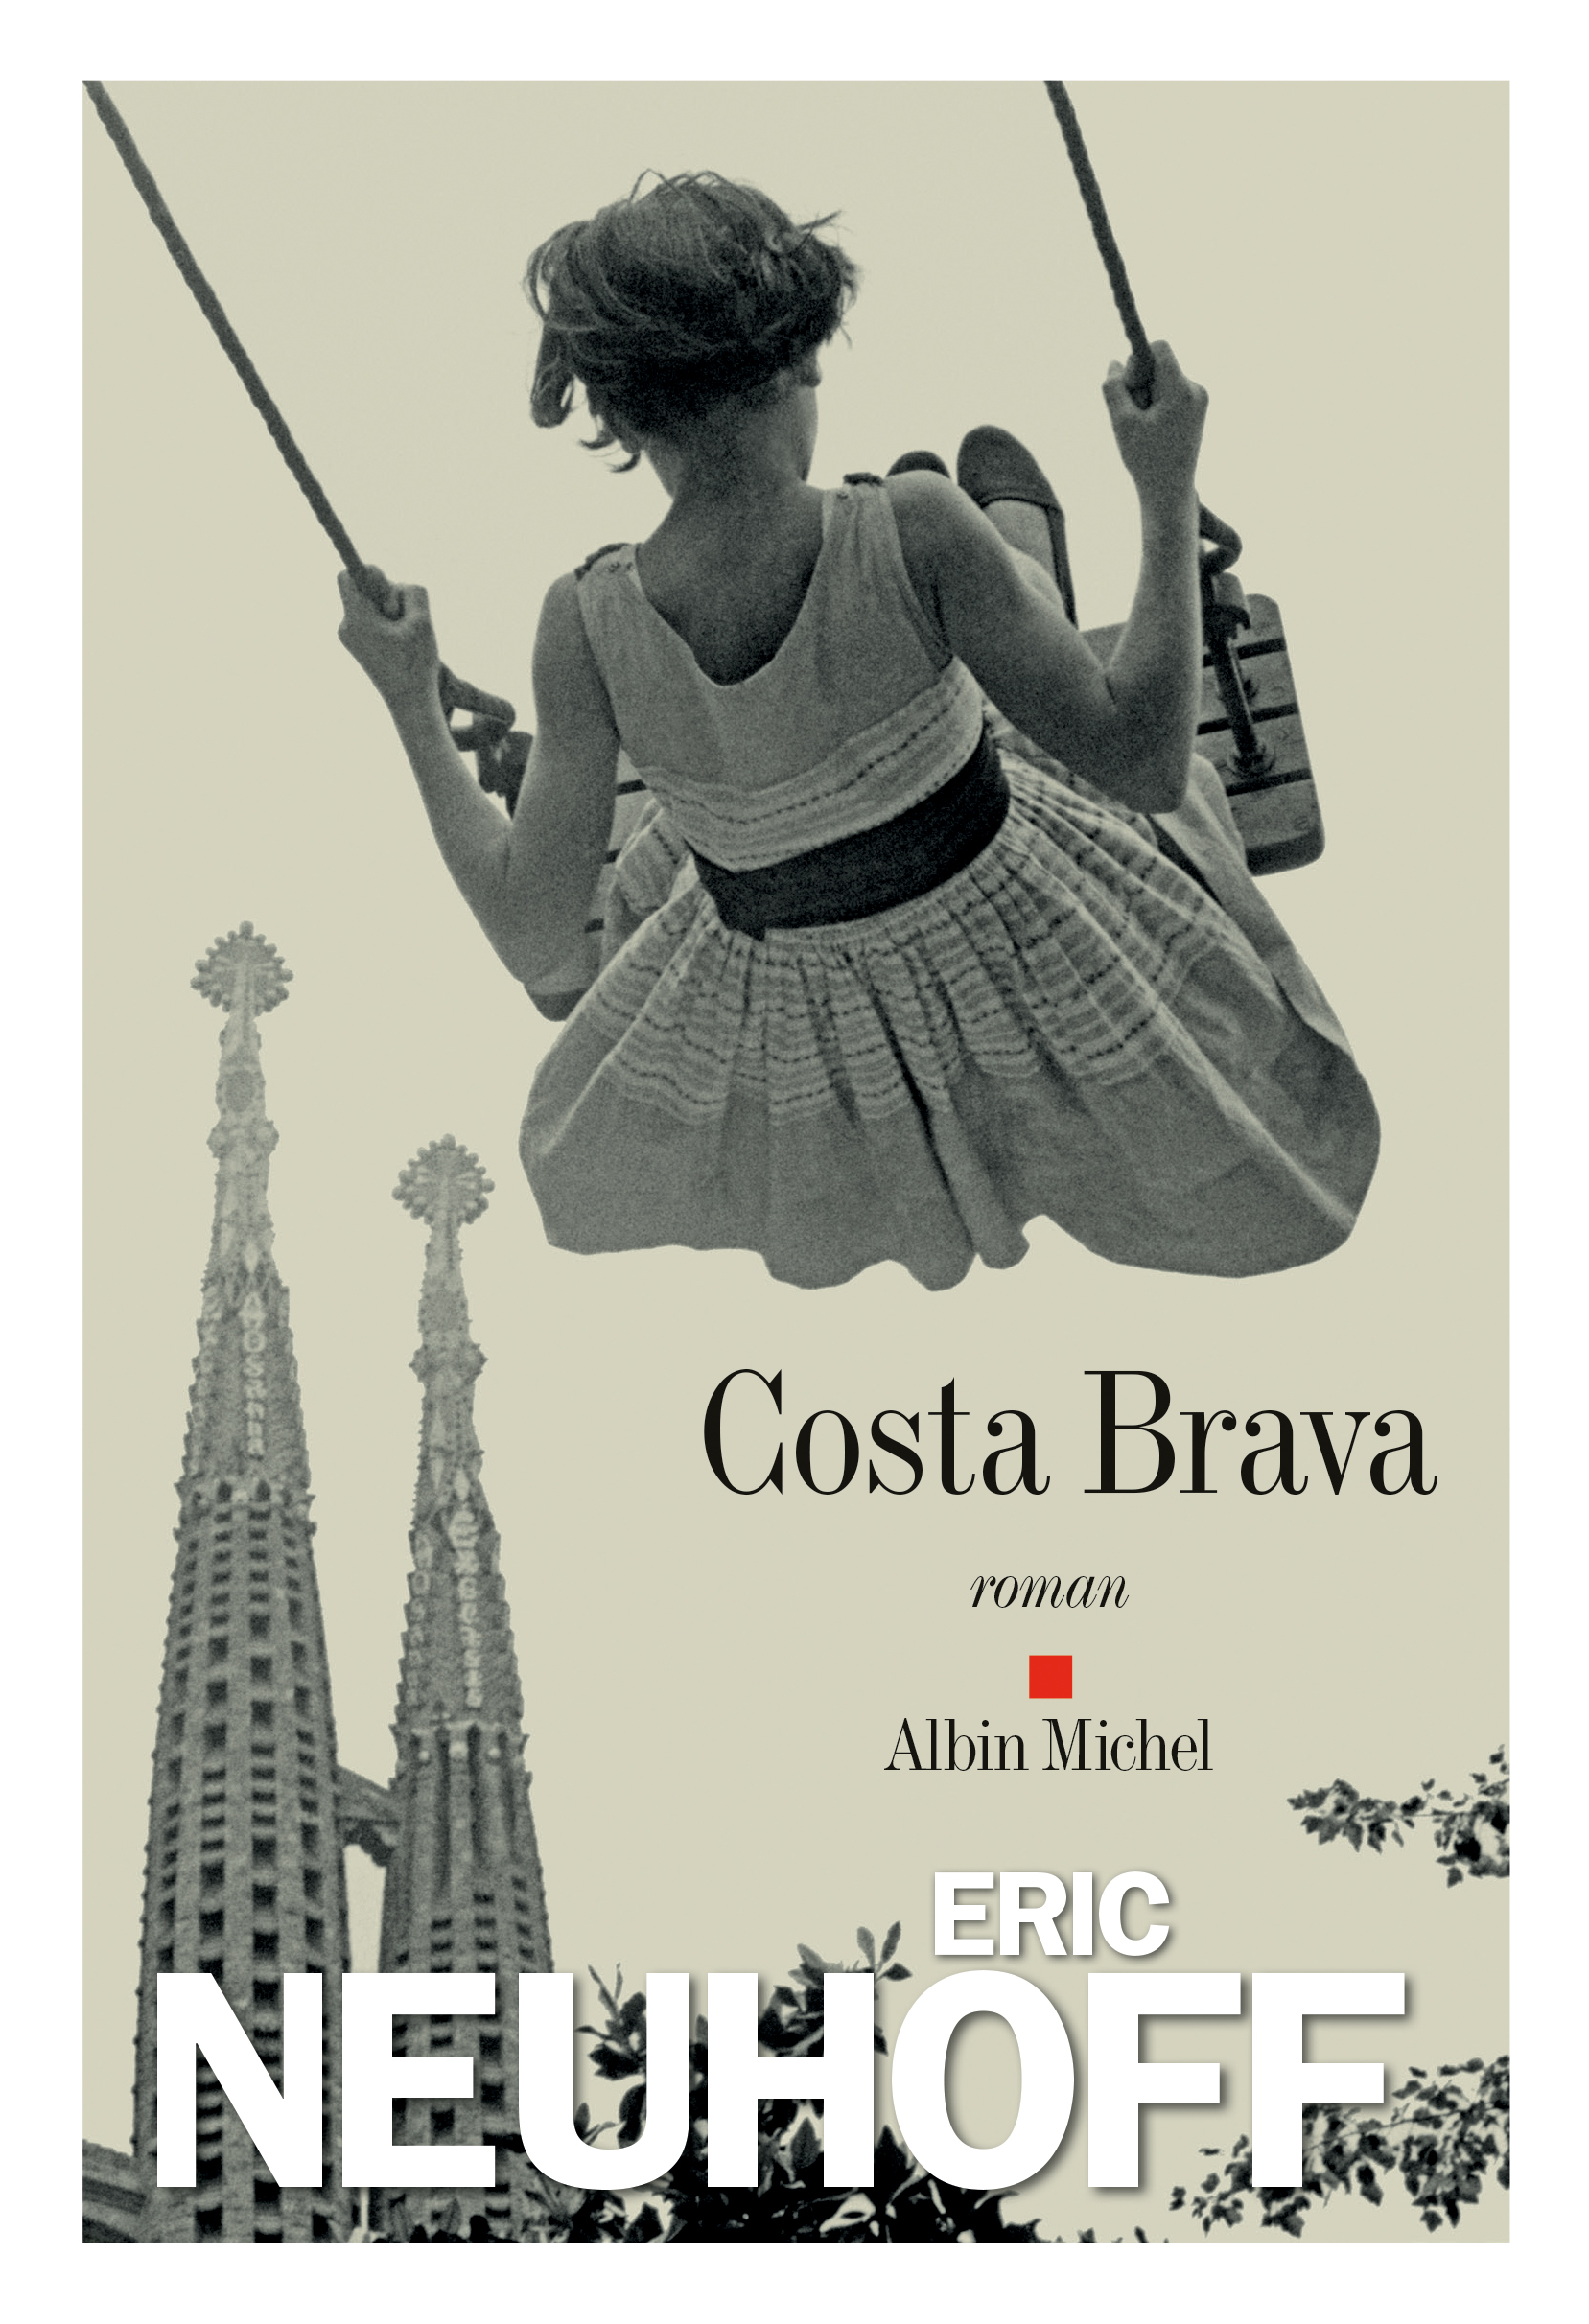 Couverture du livre Costa Brava